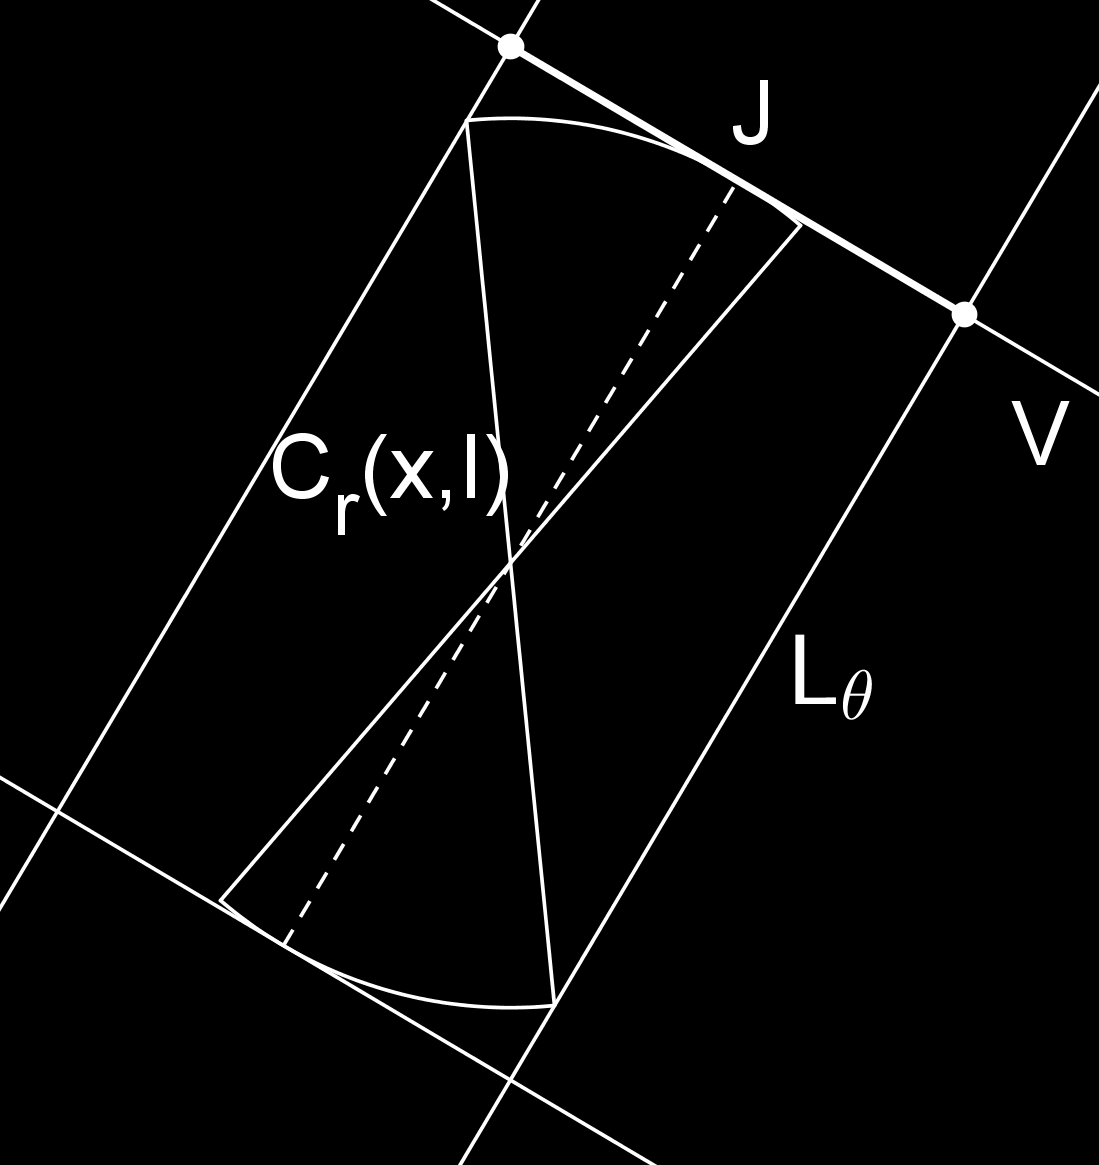 Figur 3.3: Mängden C r (x, I) innesluten i en rektangel. Av definitionen för F 2 följer att J är ett Vitali täcke för π V F 2.